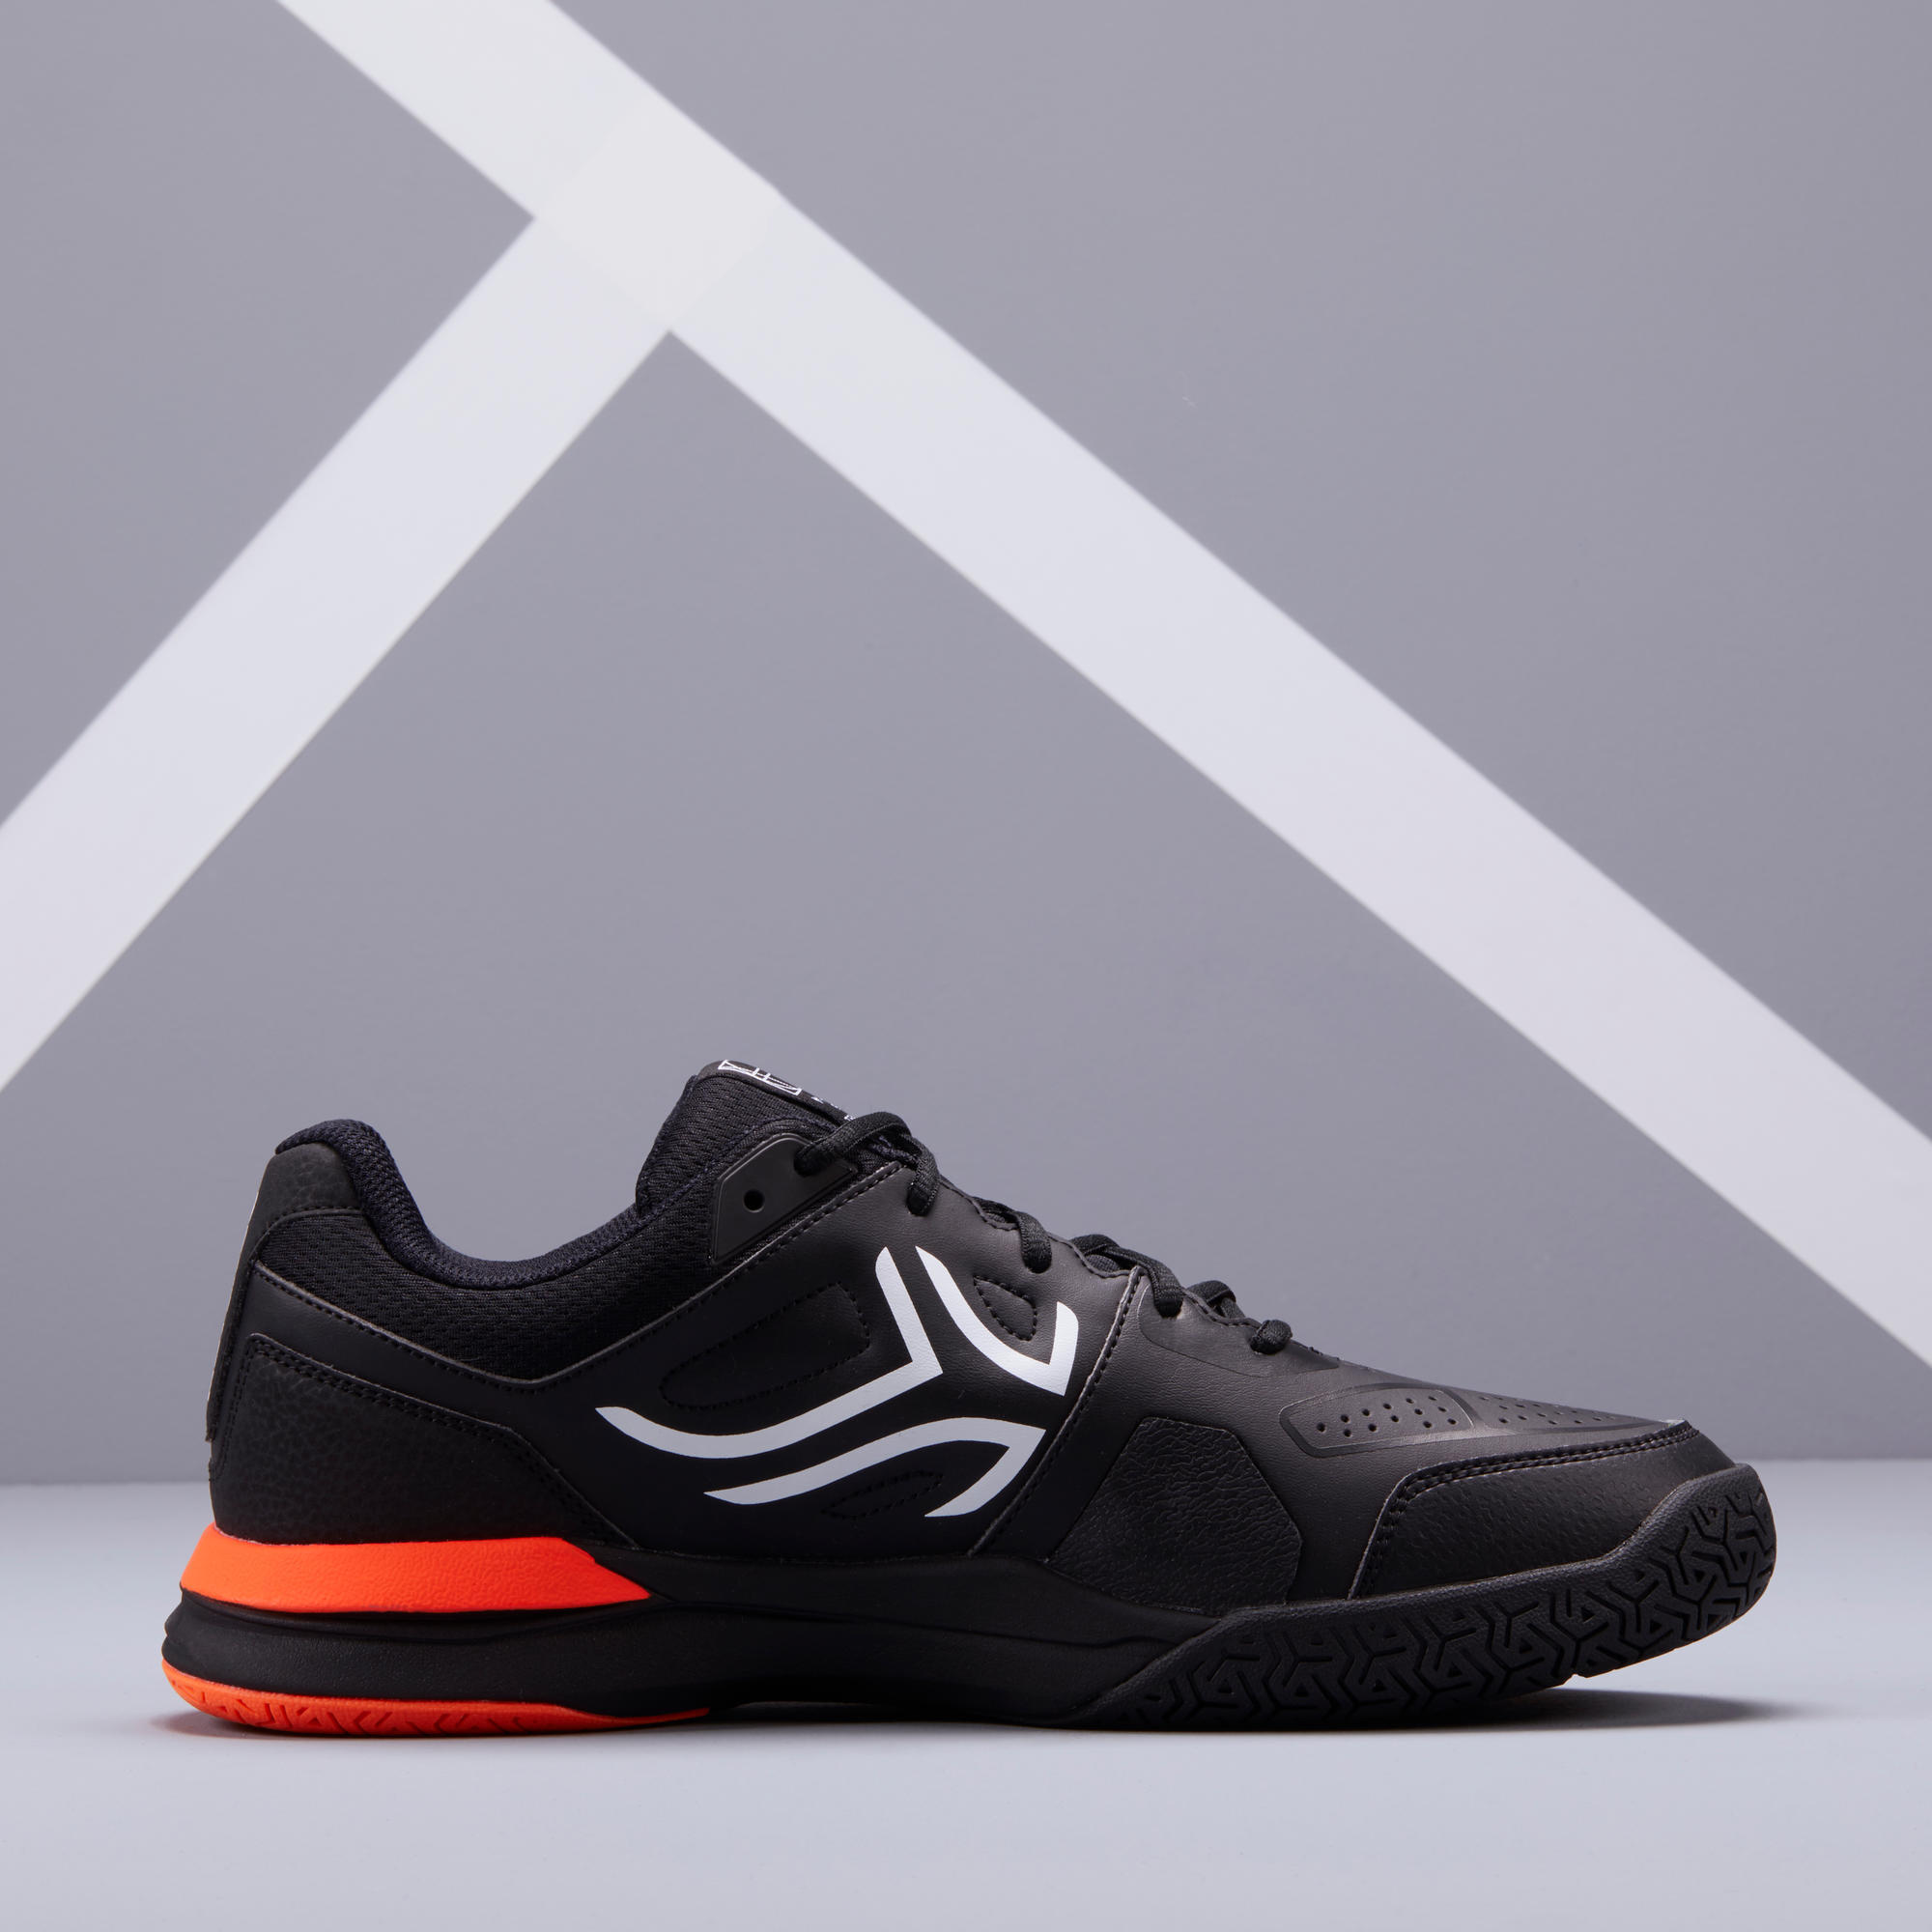 Men's Multi-Court Tennis Shoes TS500 